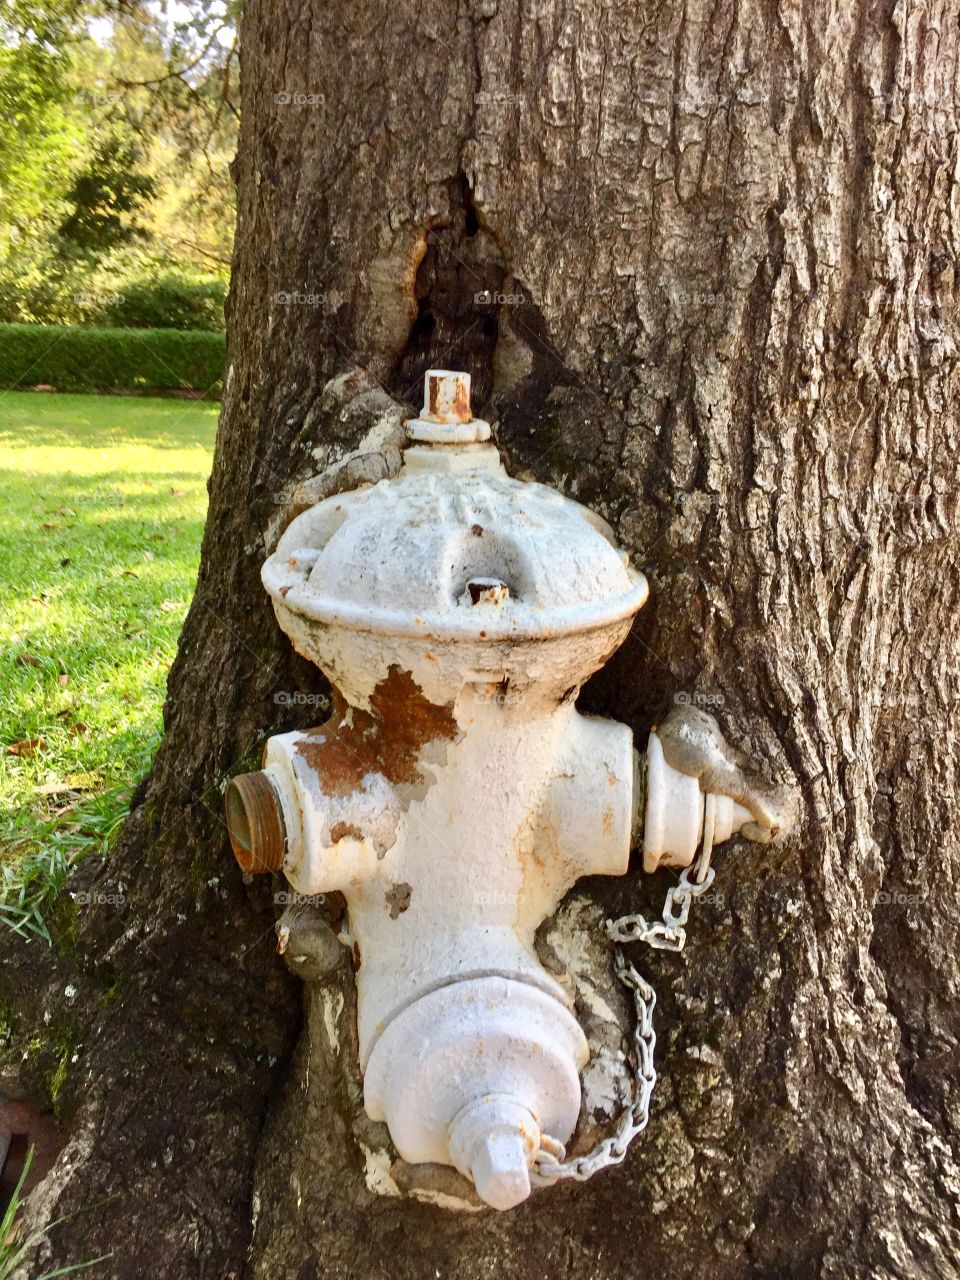 Fire hydrant eaten up by oak tree 